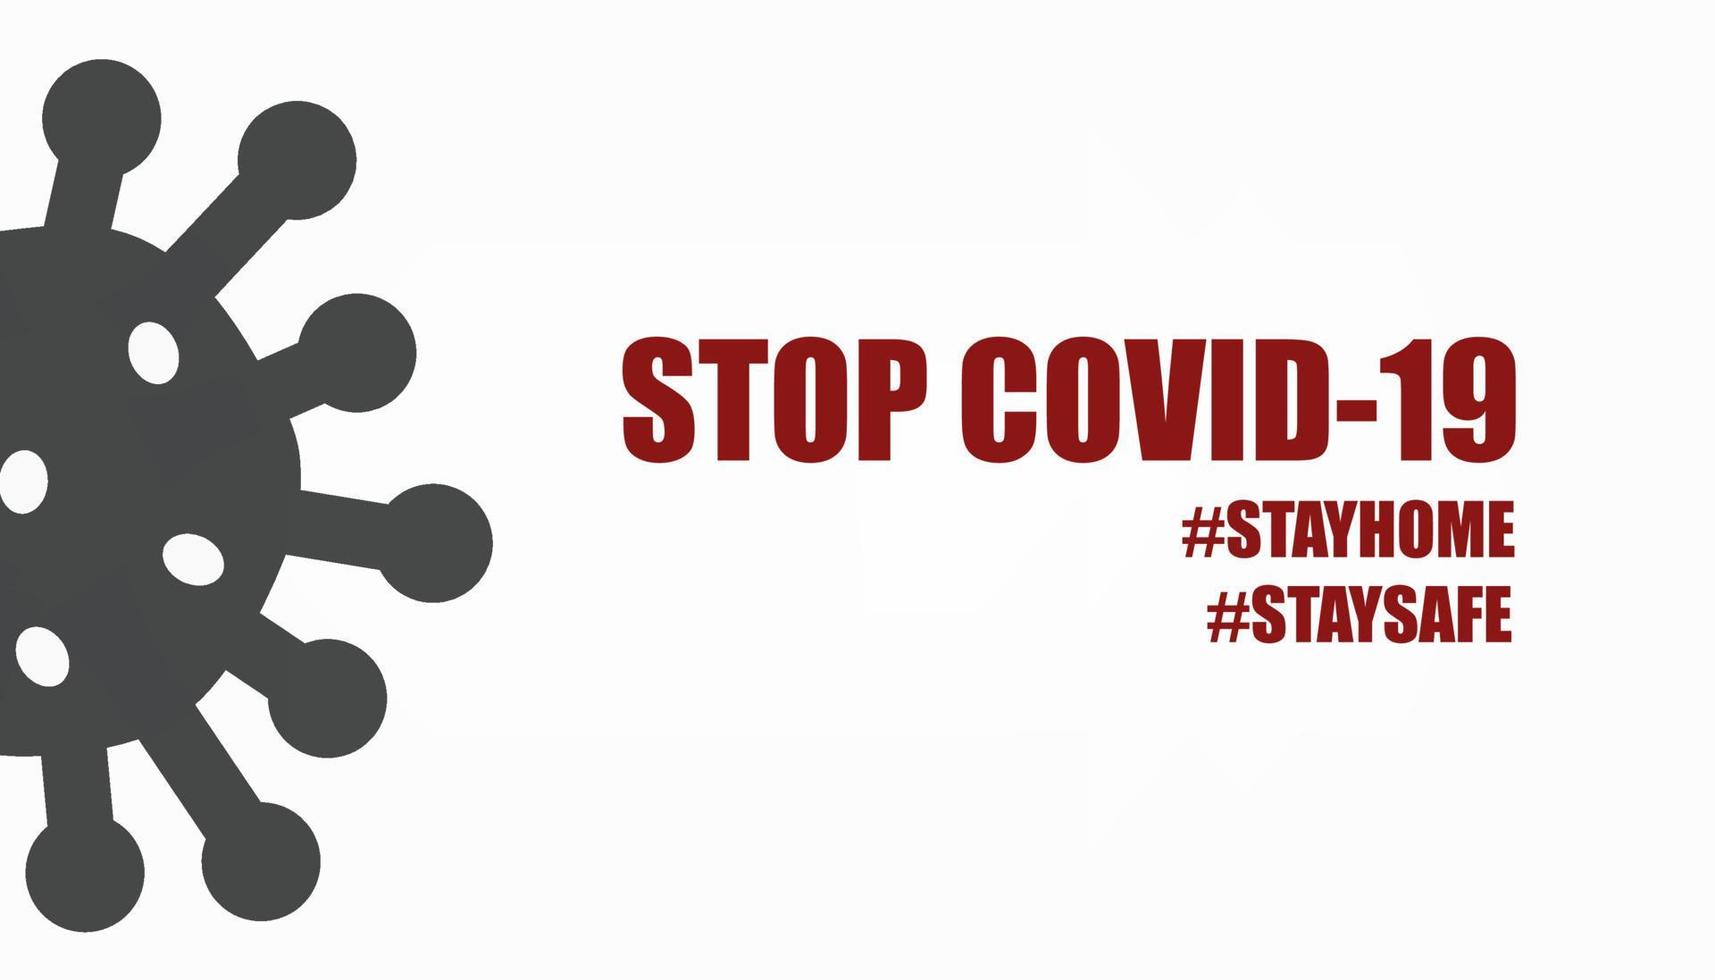 concetto di sfondo minimo di smettere di diffondere la campagna covid-19 restando a casa, restando al sicuro con l'hashtag. vettore